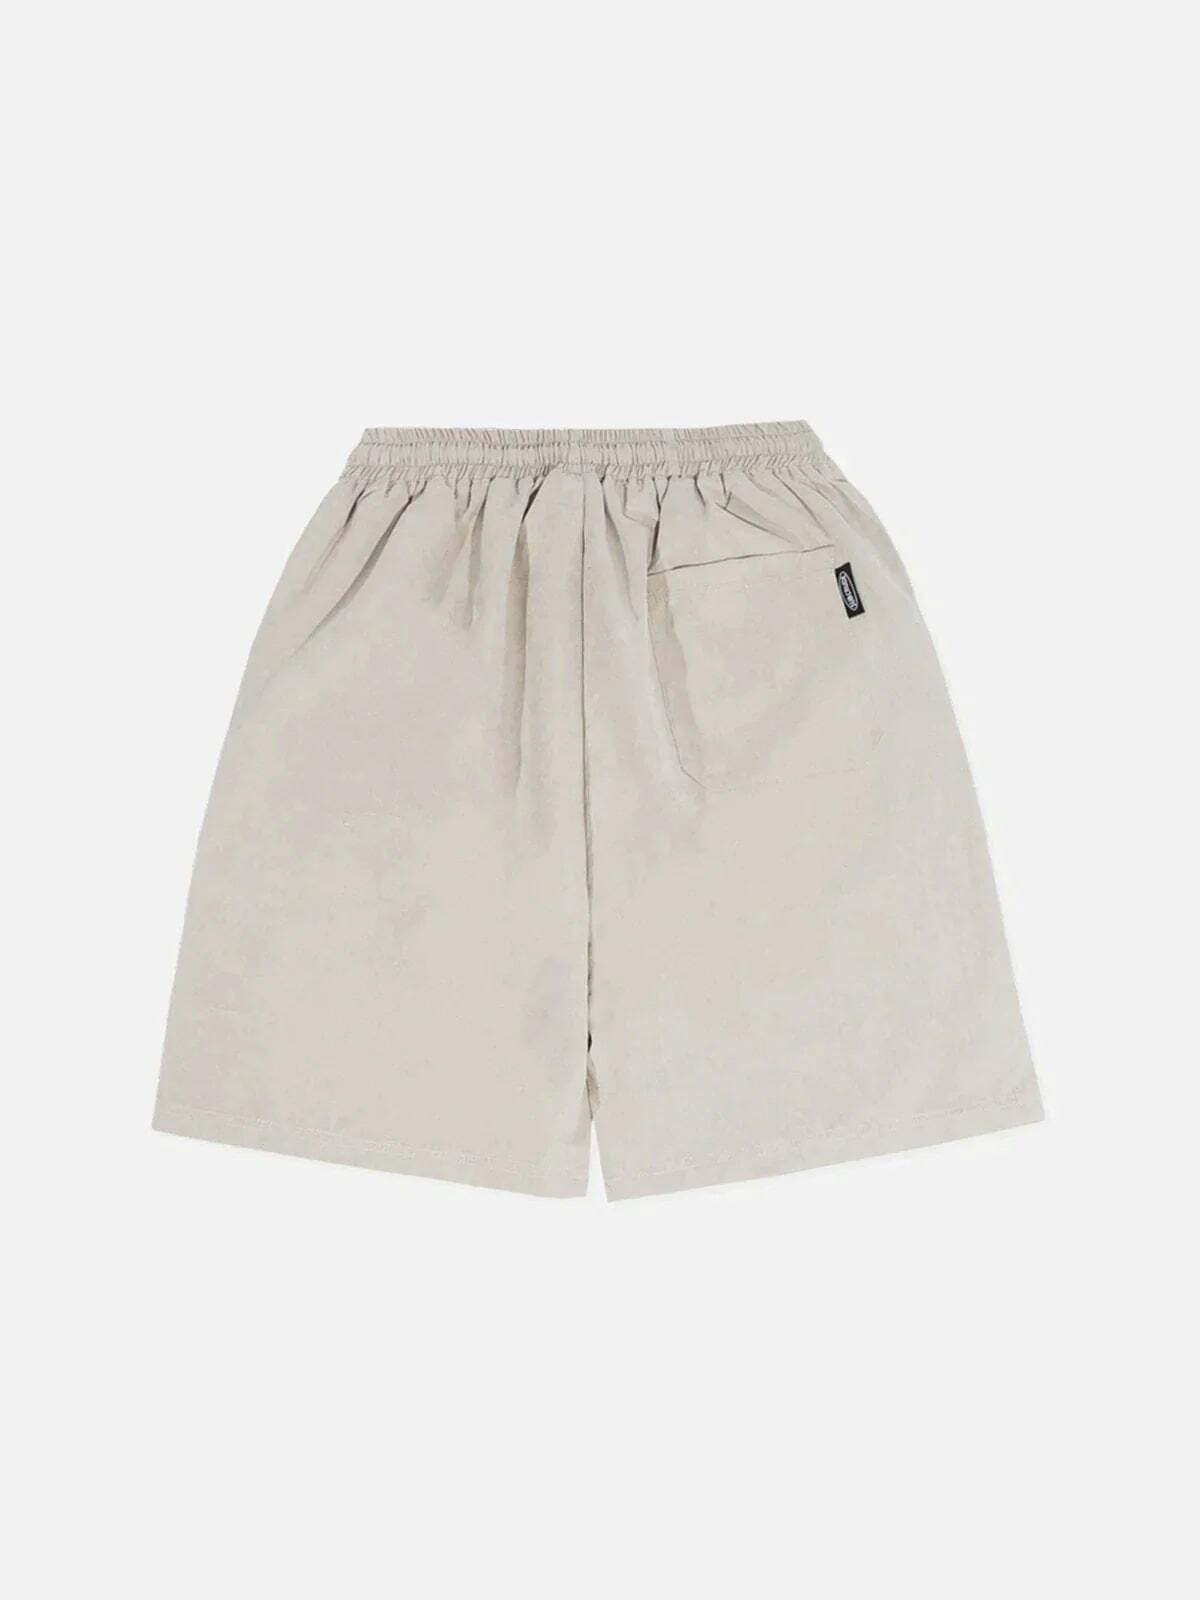 foam letter print shorts edgy y2k streetwear 6050